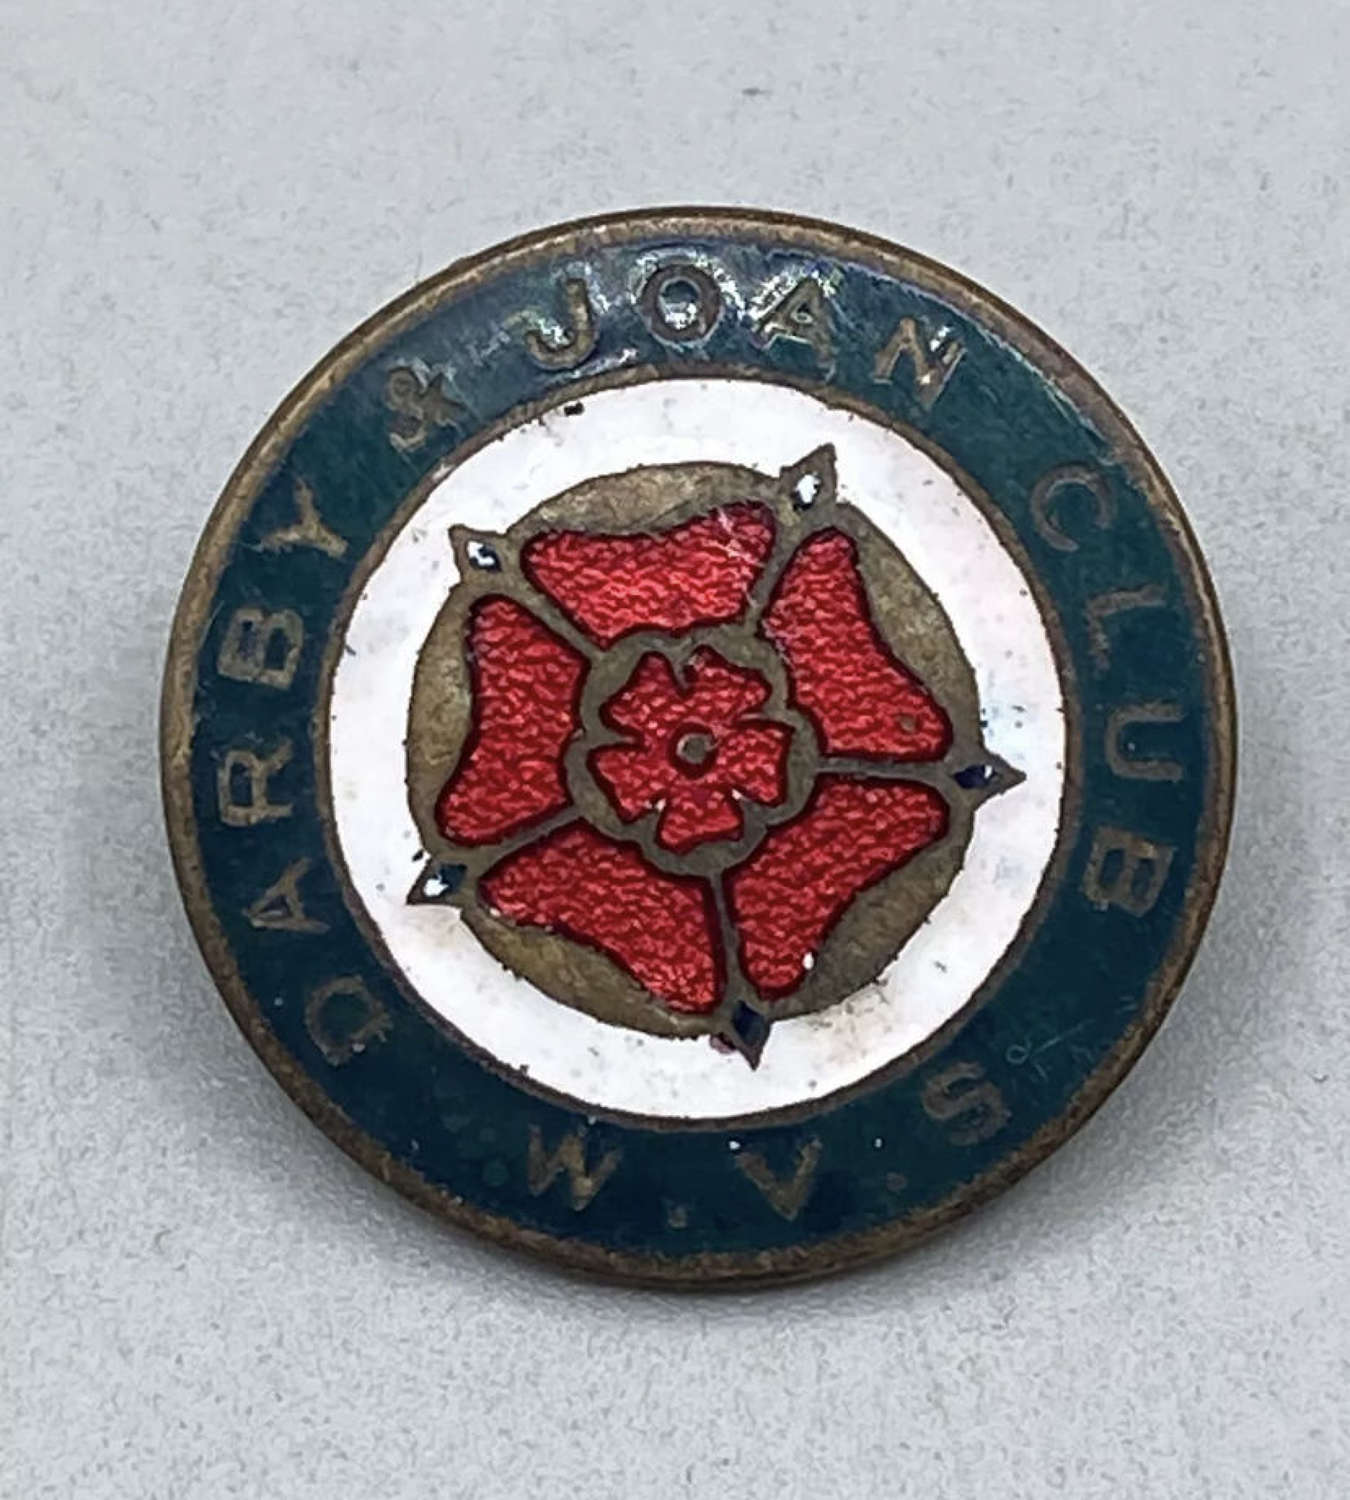 WW2 Women's Voluntary Service Darby & Joan Club Enamel Badge